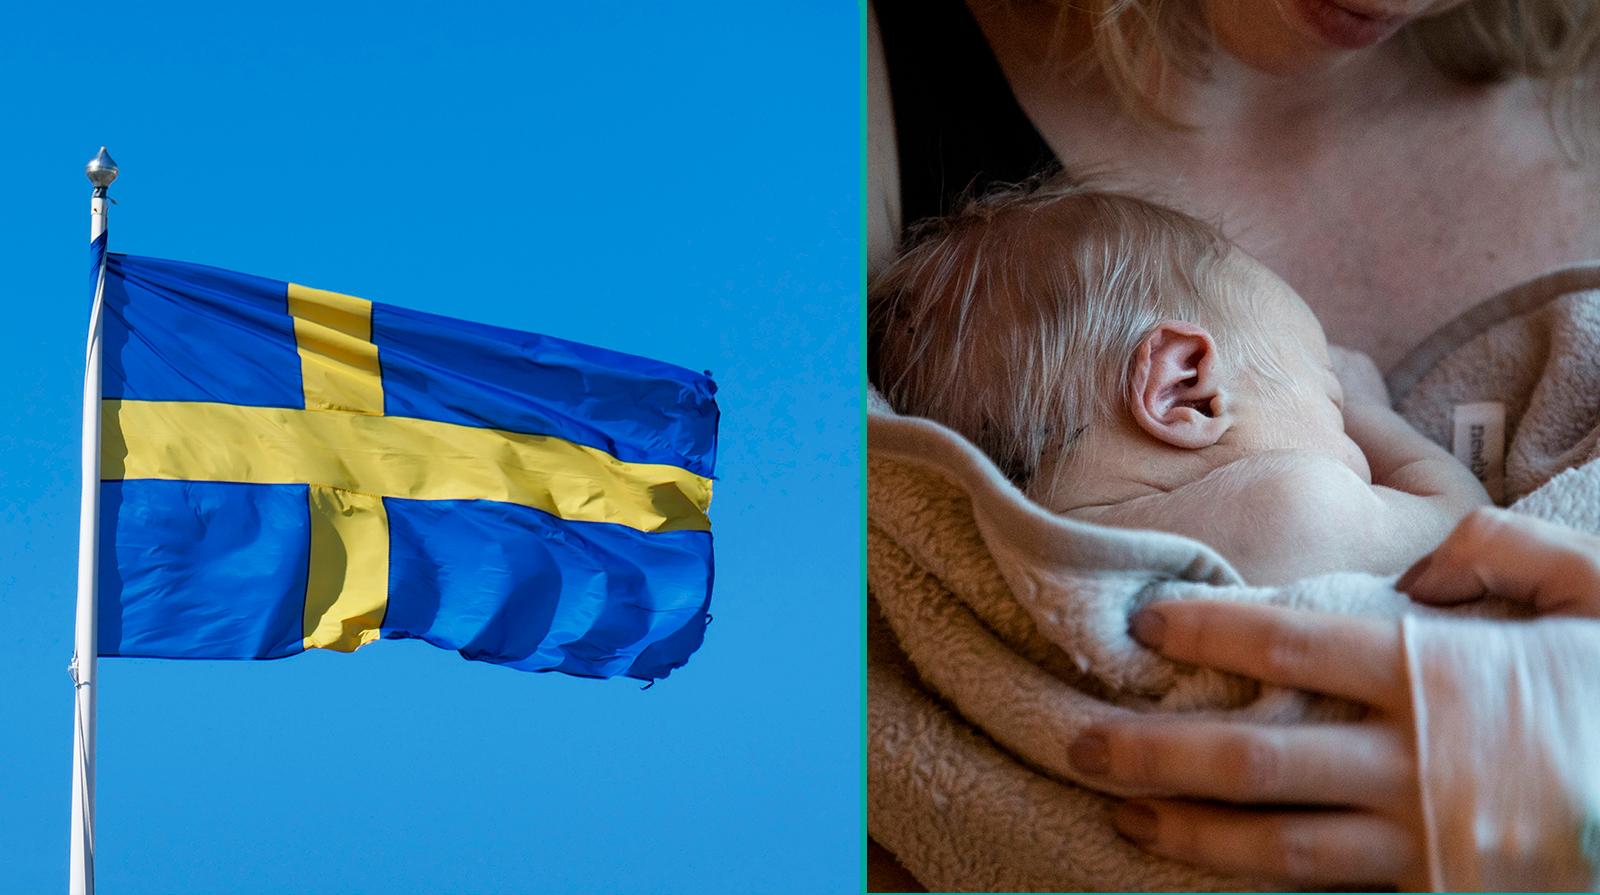 Sverige bäst på att rädda för tidigt födda enligt ny studie. 